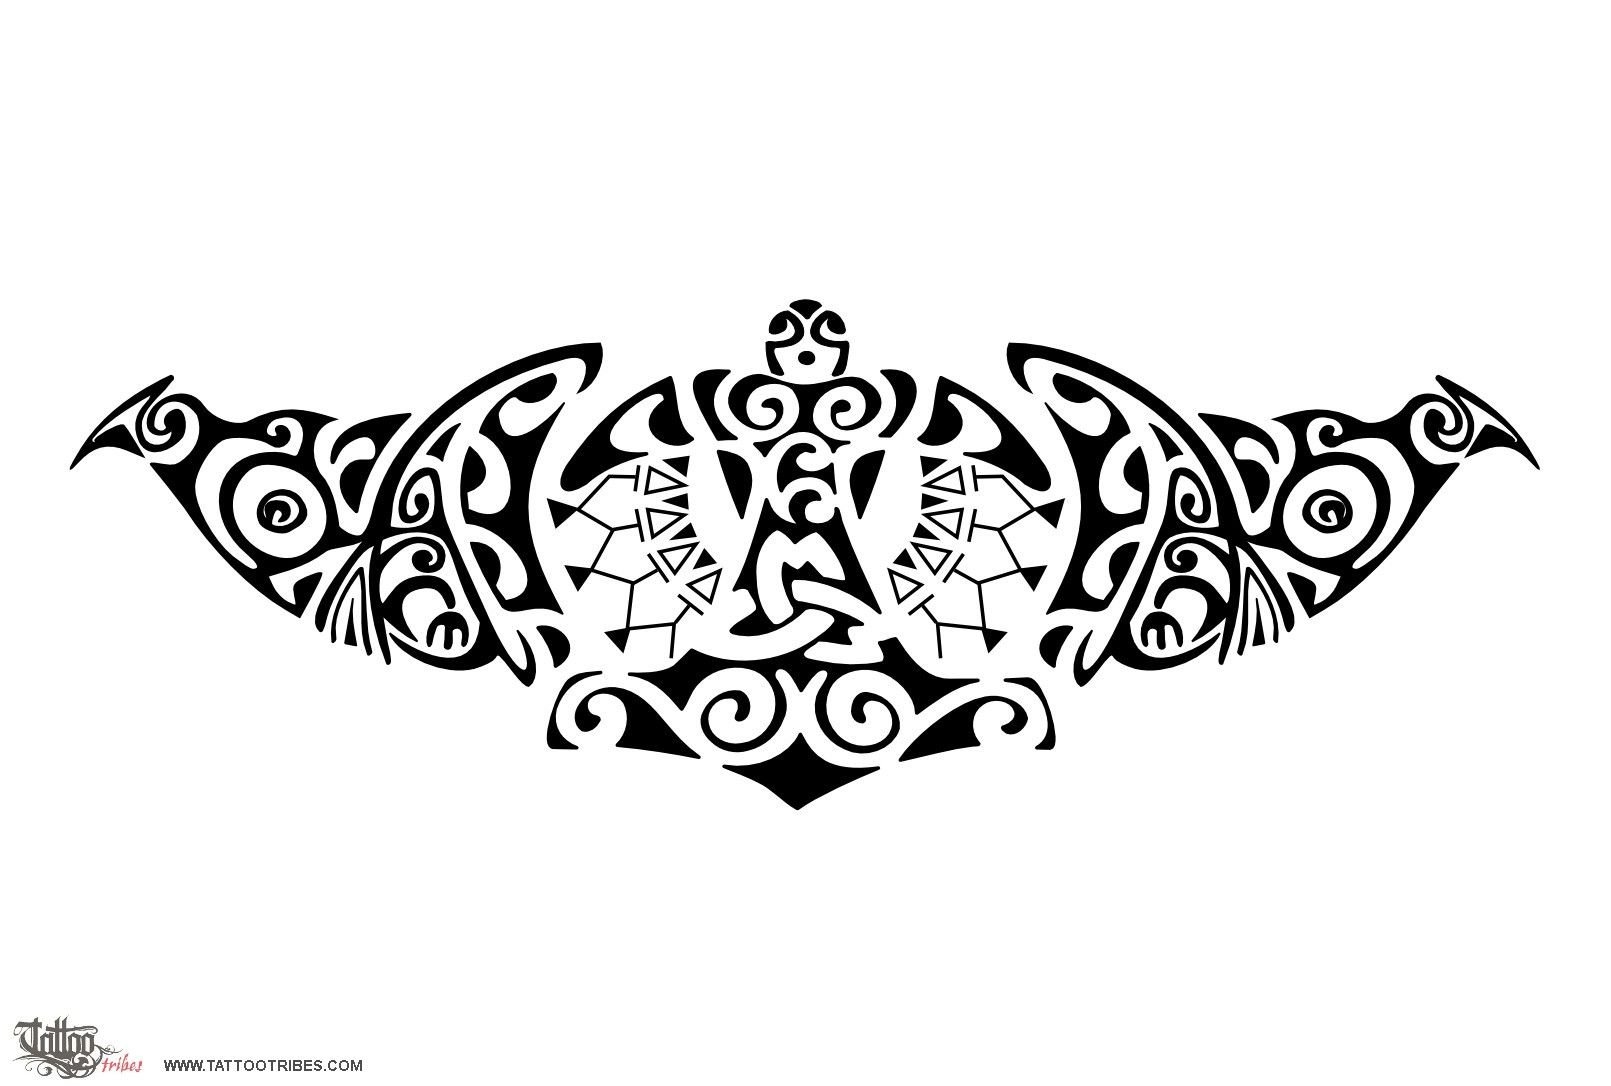 Значение тату в стиле Полинезия (70+ фото)